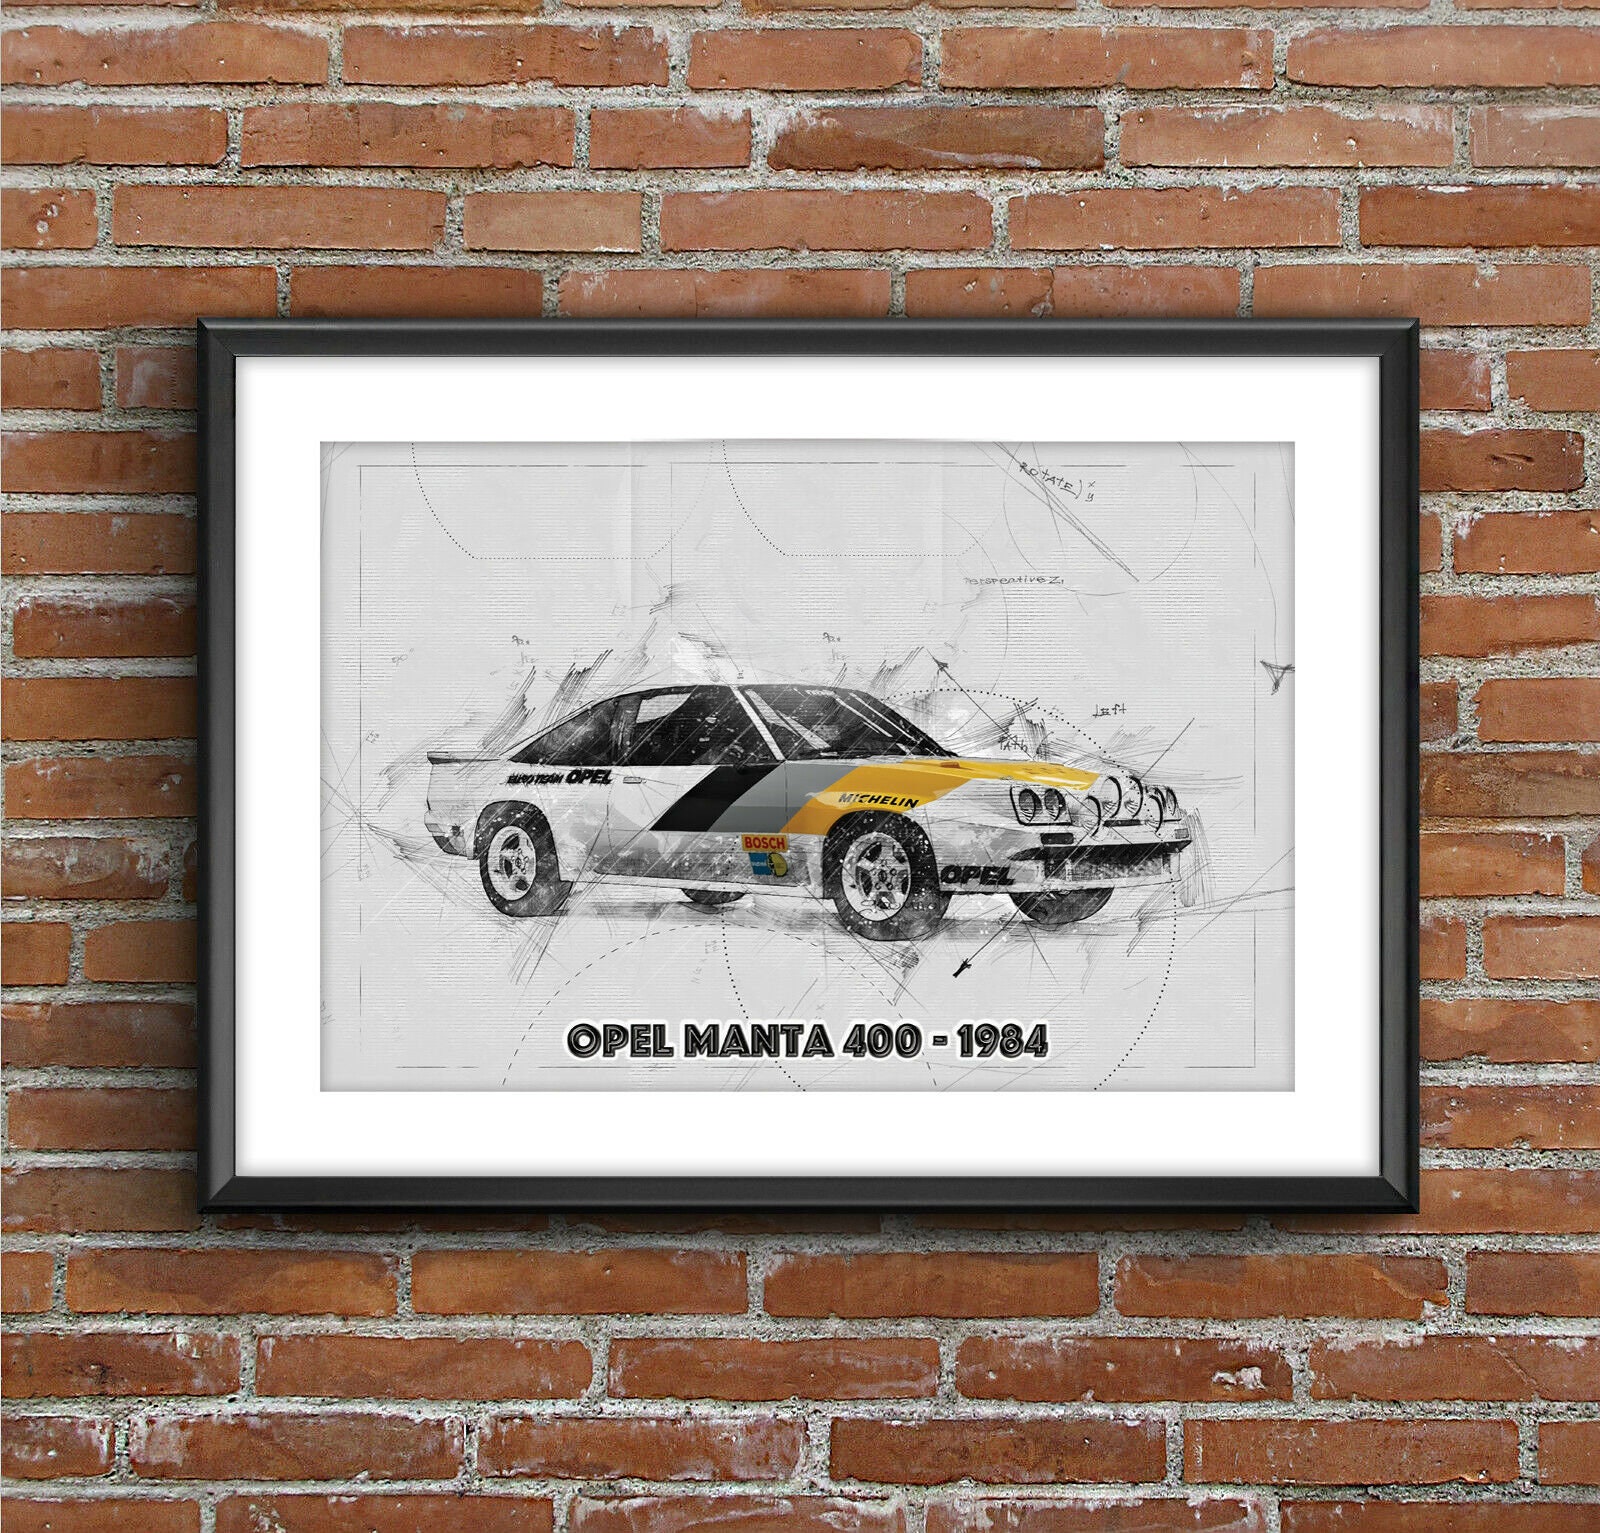 275 Opel Manta Bilder, Stockfotos, 3D-Objekte und Vektorgrafiken